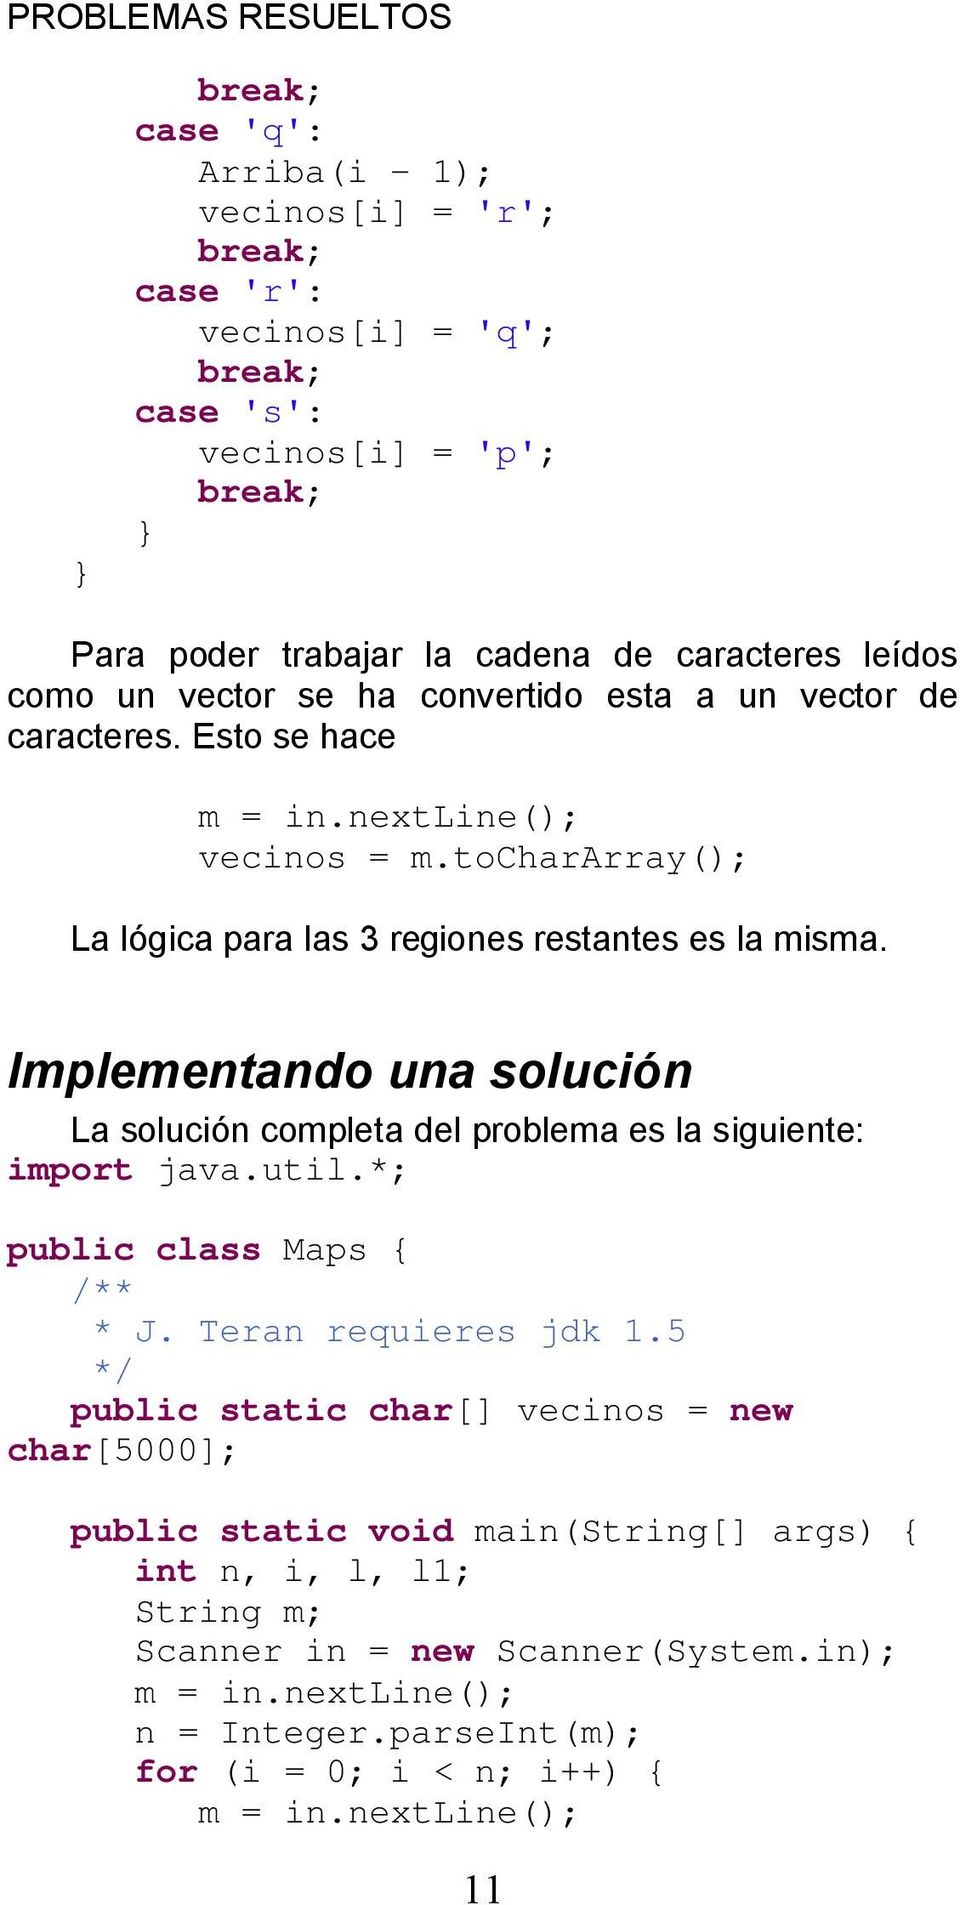 Implementando una solución La solución completa del problema es la siguiente: import java.util.*; public class Maps { /** * J. Teran requieres jdk 1.